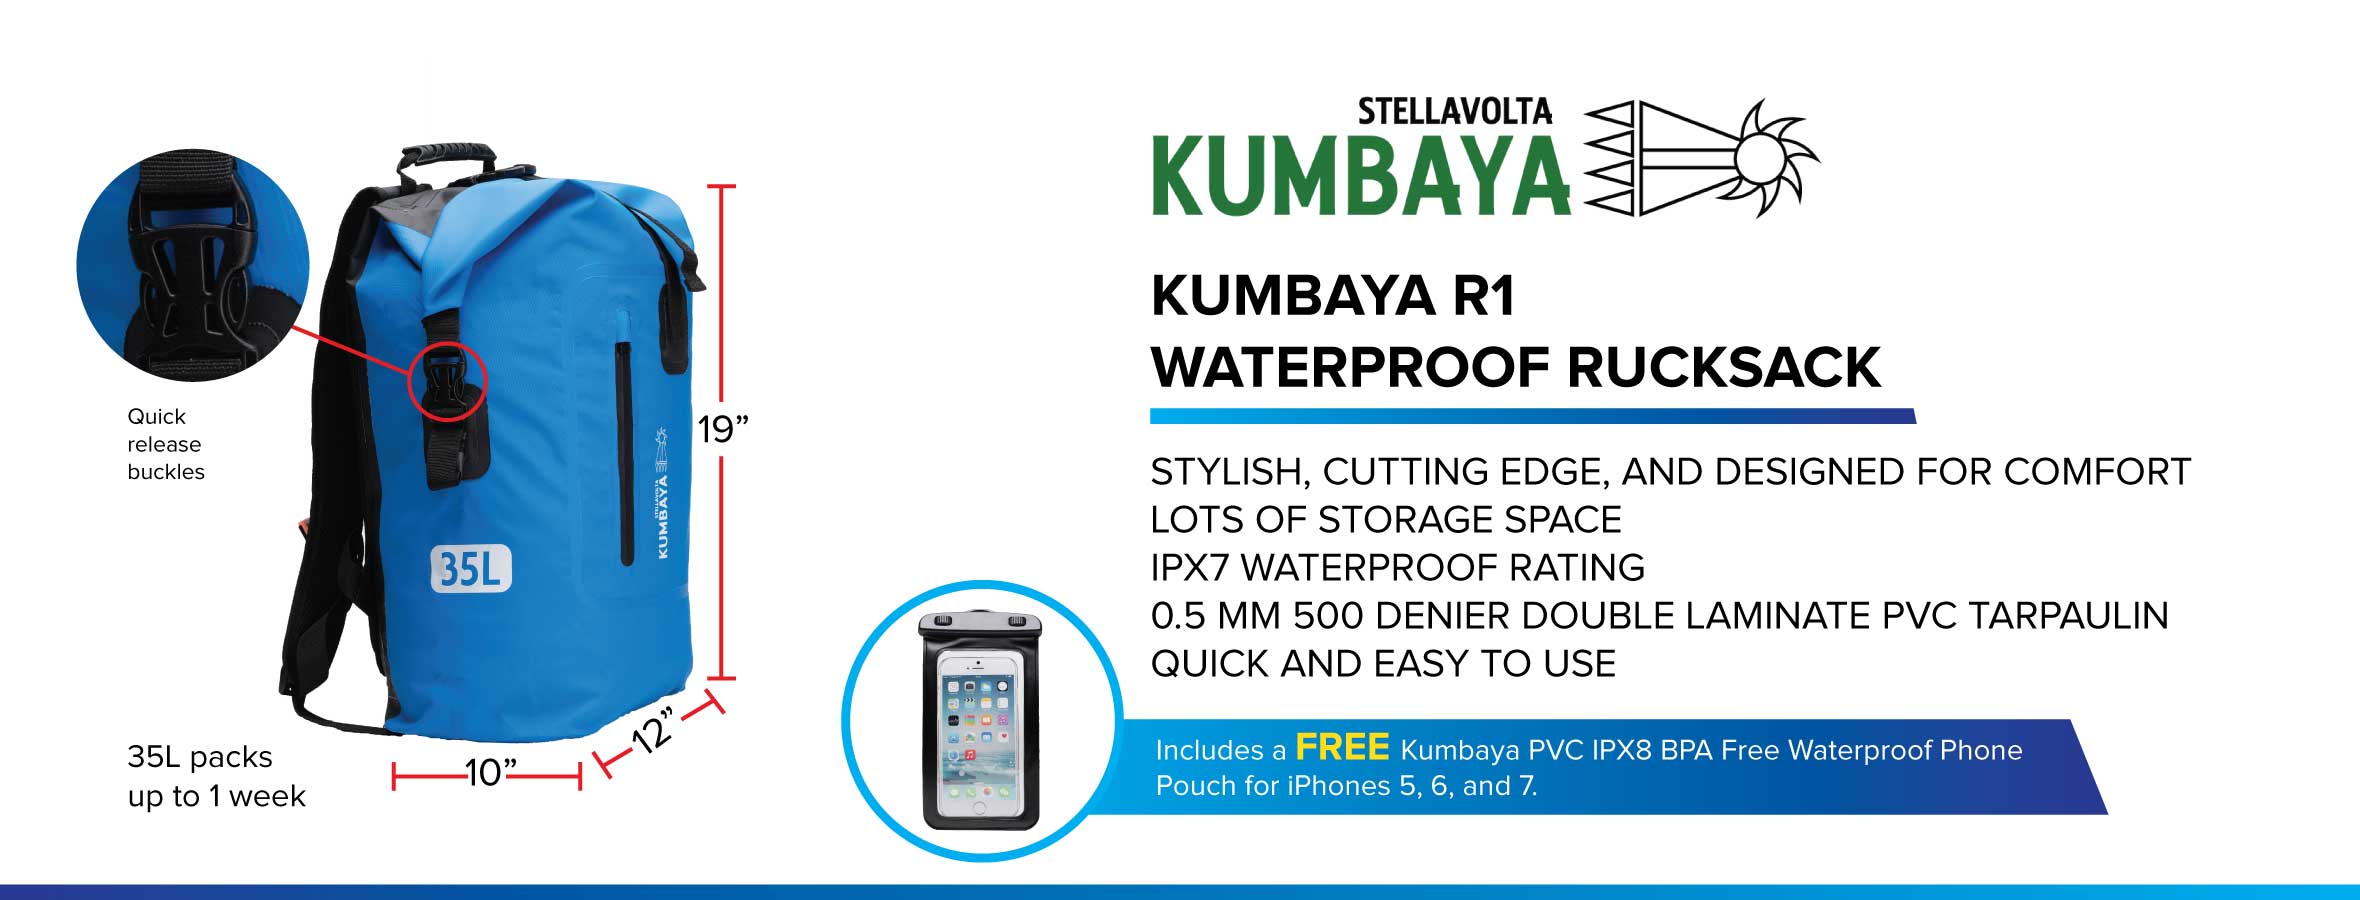 Kumbaya R1 Rucksack Ad